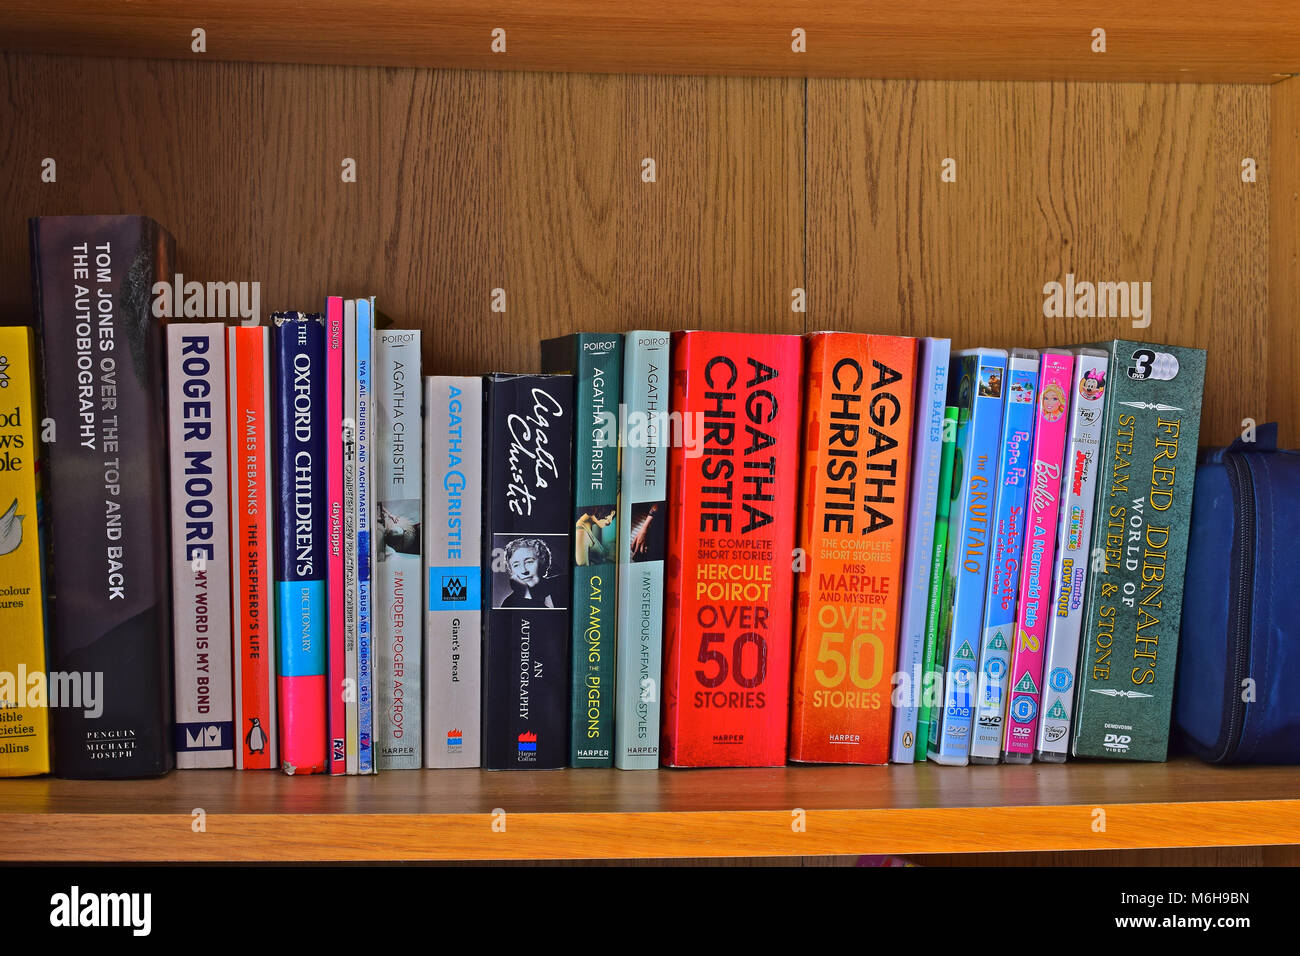 Una fila de libros en una estantería de estudio en el hogar, principalmente por el famoso escritor del delito - Agatha Christie Foto de stock